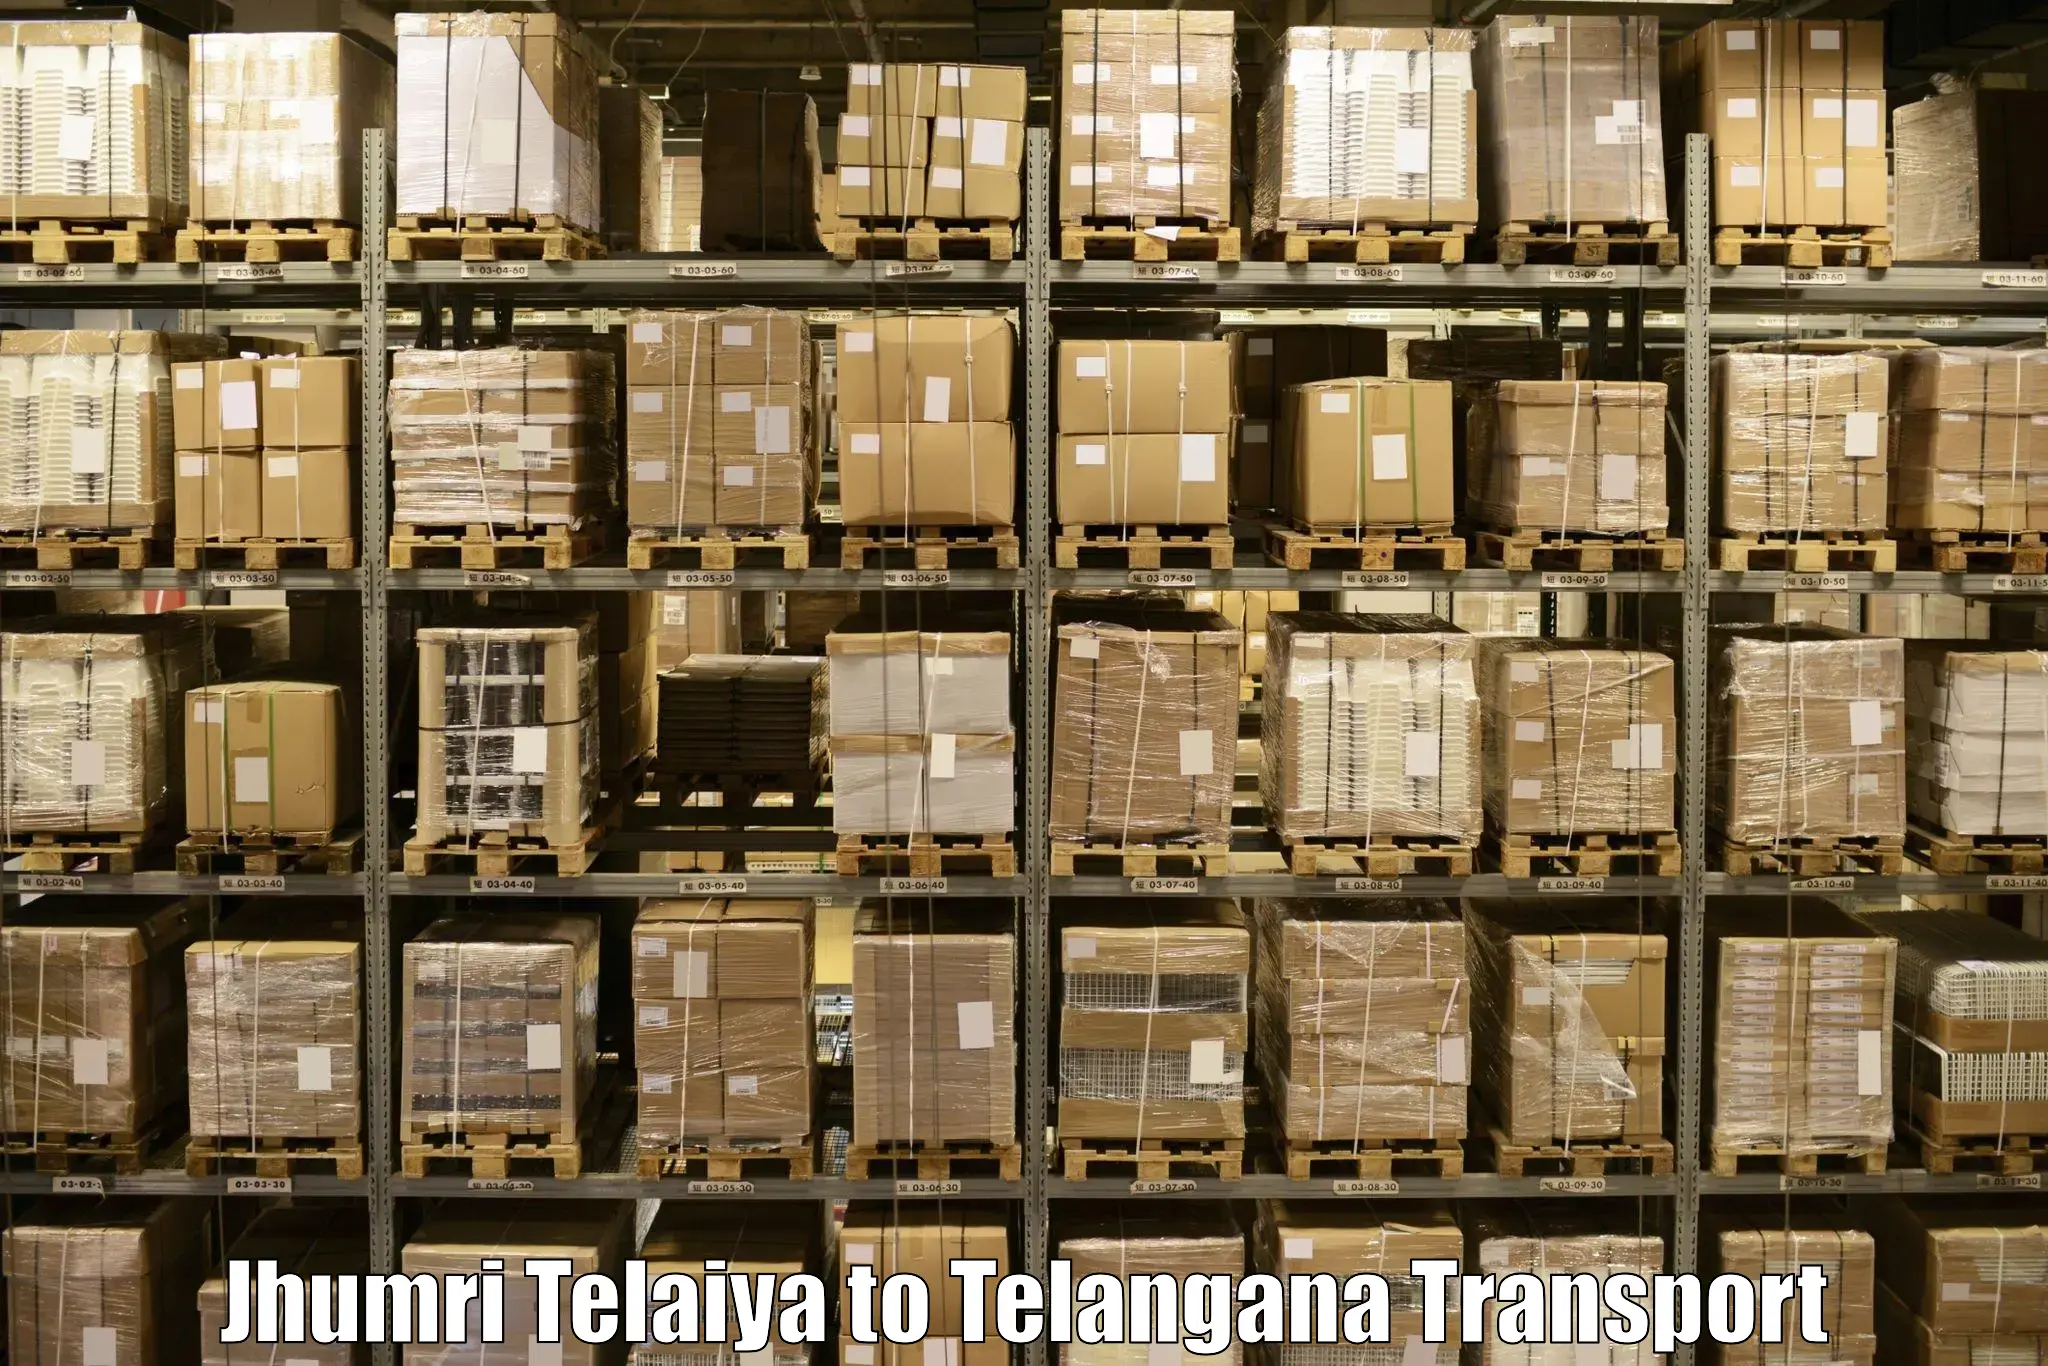 Delivery service Jhumri Telaiya to Jannaram